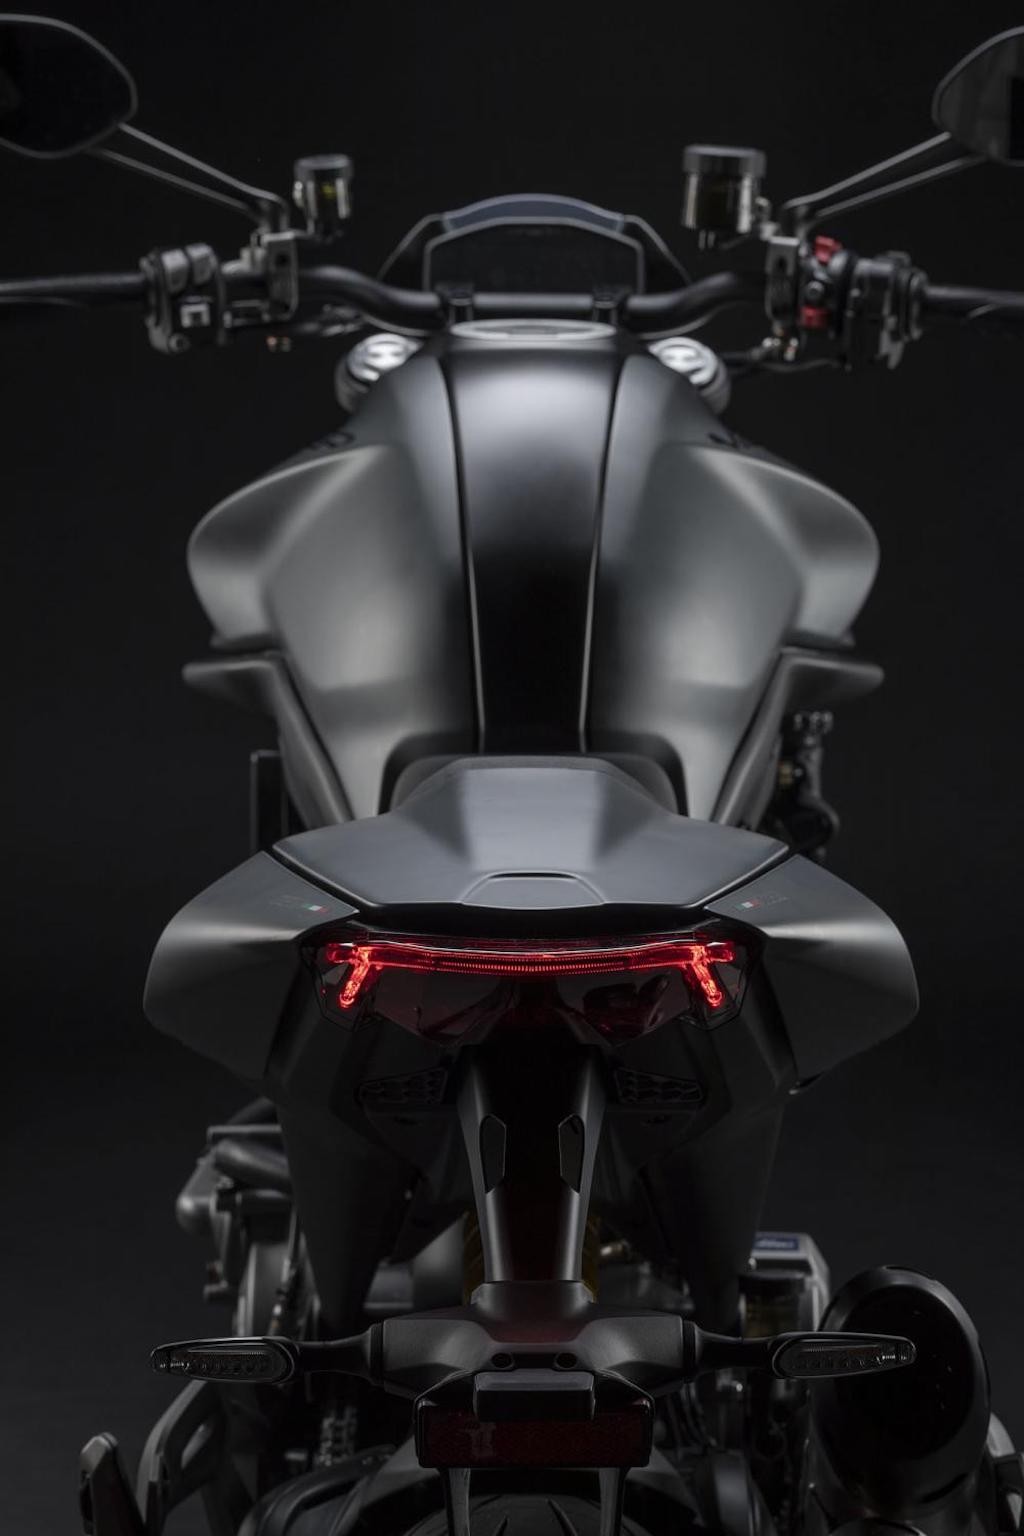 “Quái vật” naked bike Ducati Monster lột xác toàn diện sau gần 30 năm, “mất chất” nhưng hiệu năng tăng gấp bội ảnh 4